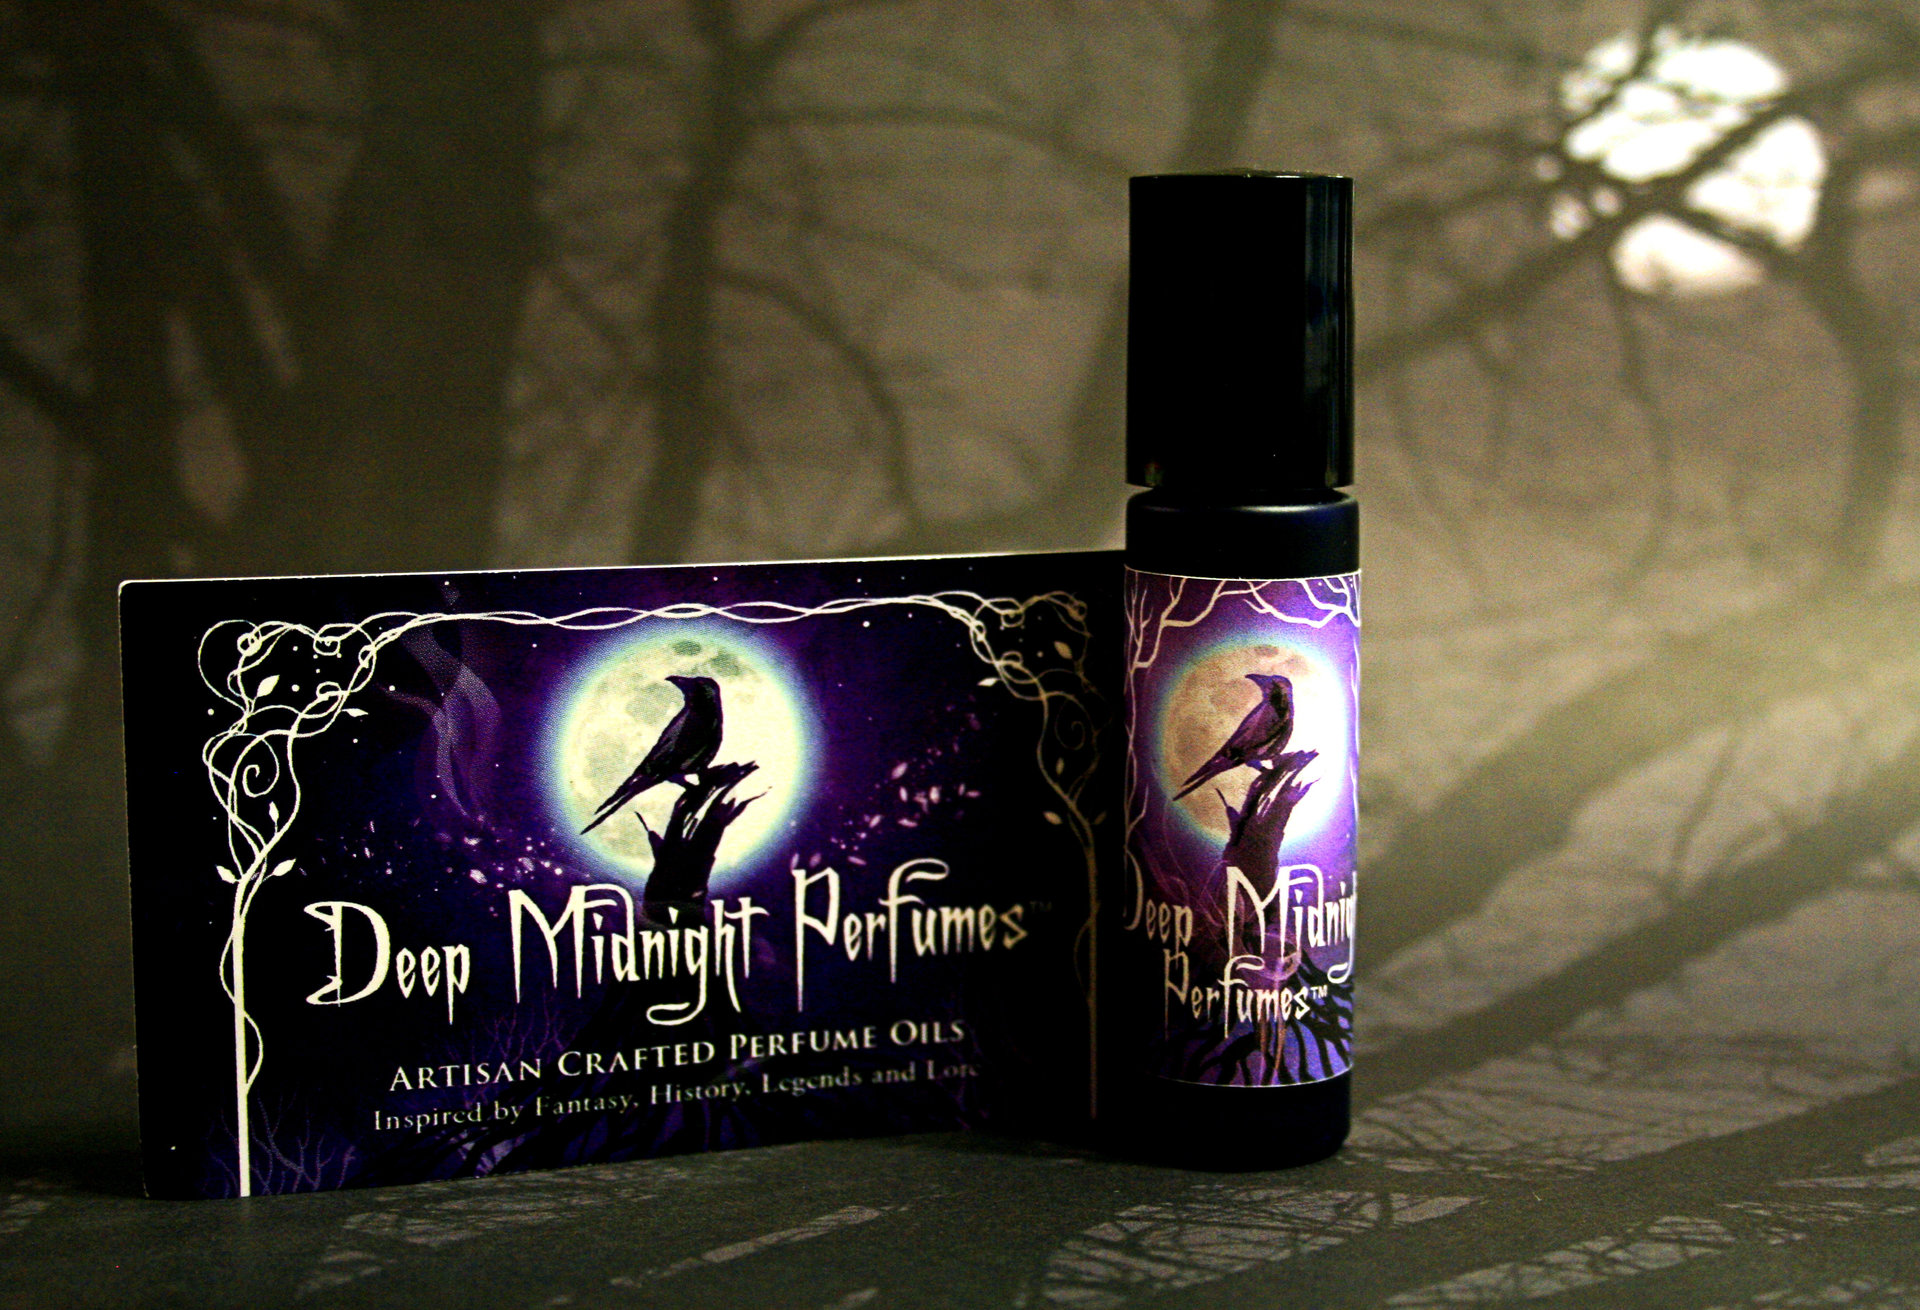 Dragon's Orb Perfume Oil -  Inspired by THE HOBBIT - White Amber, Black Pepper, Juniper Berries, Vetiver